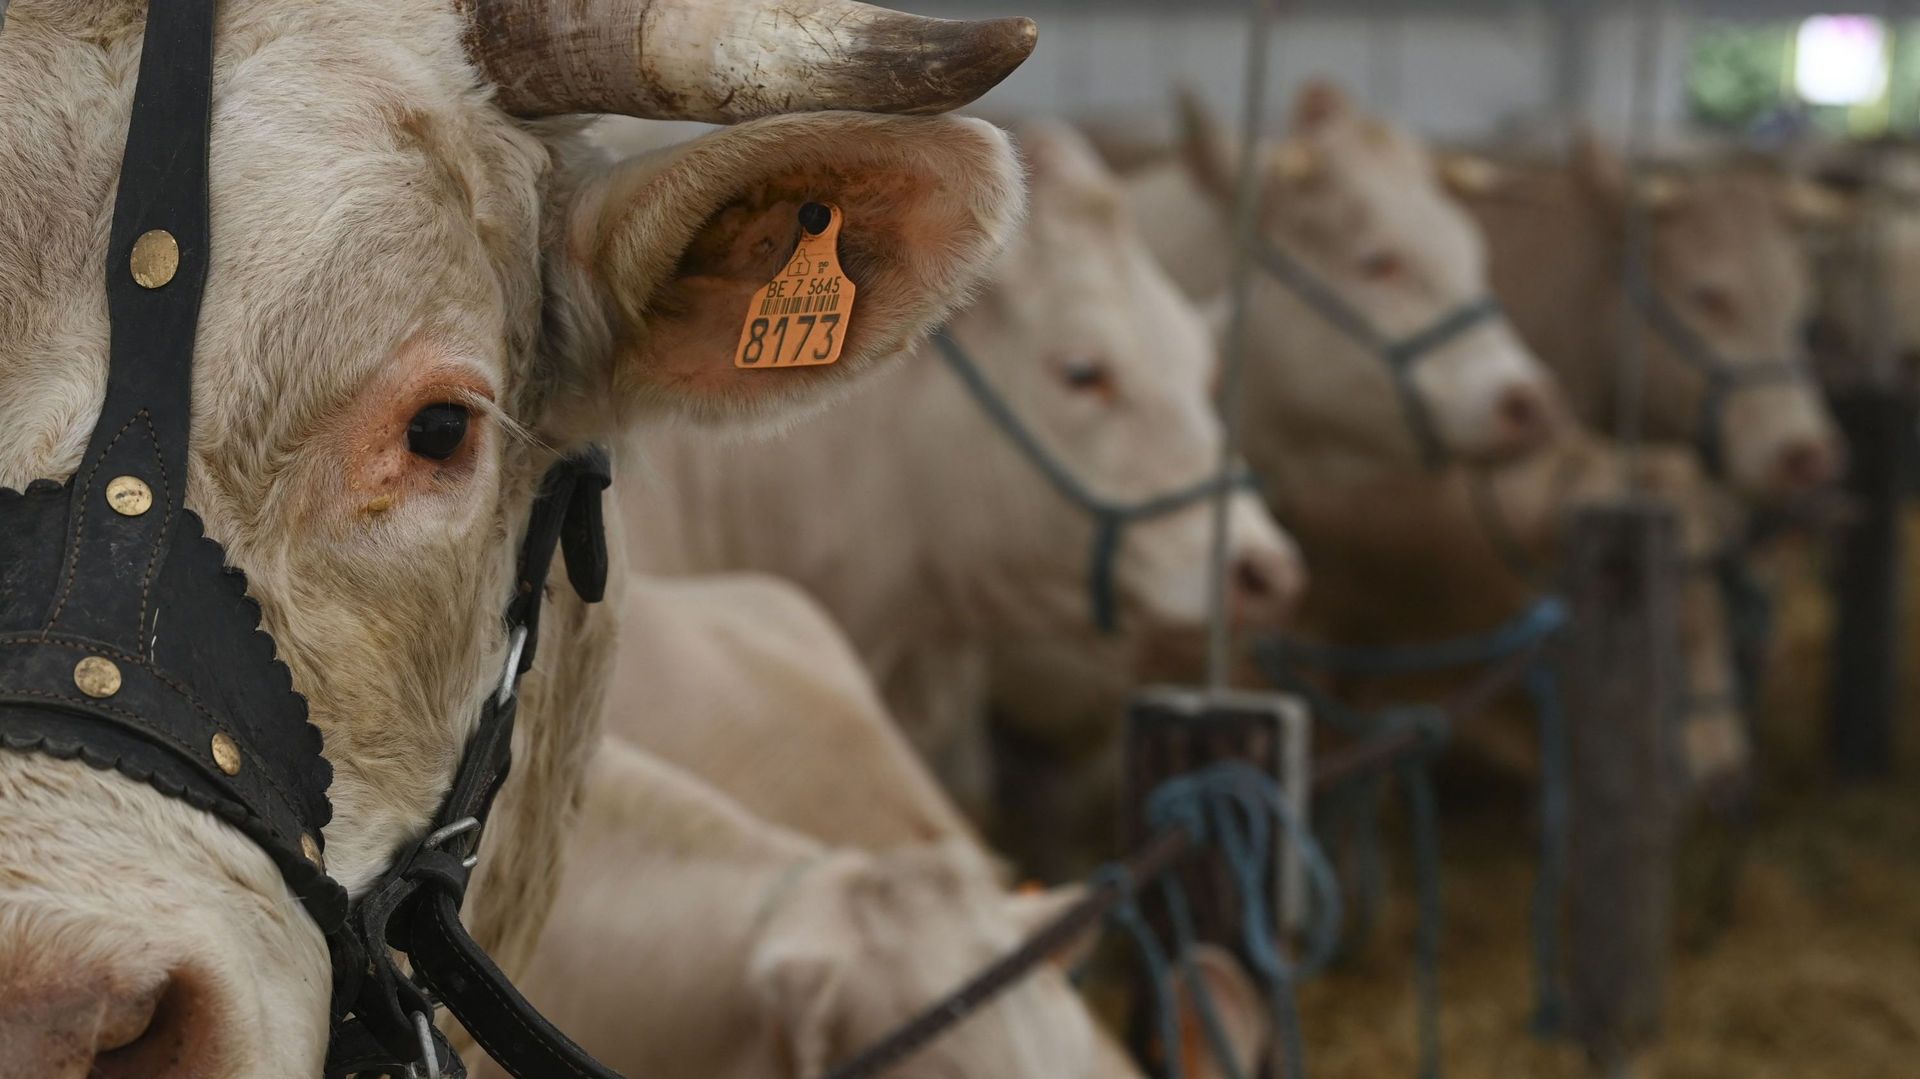 Une vache charolaise lors de la foire agricole de plein air de Libramont, le 30 juillet 2022 (illustration)